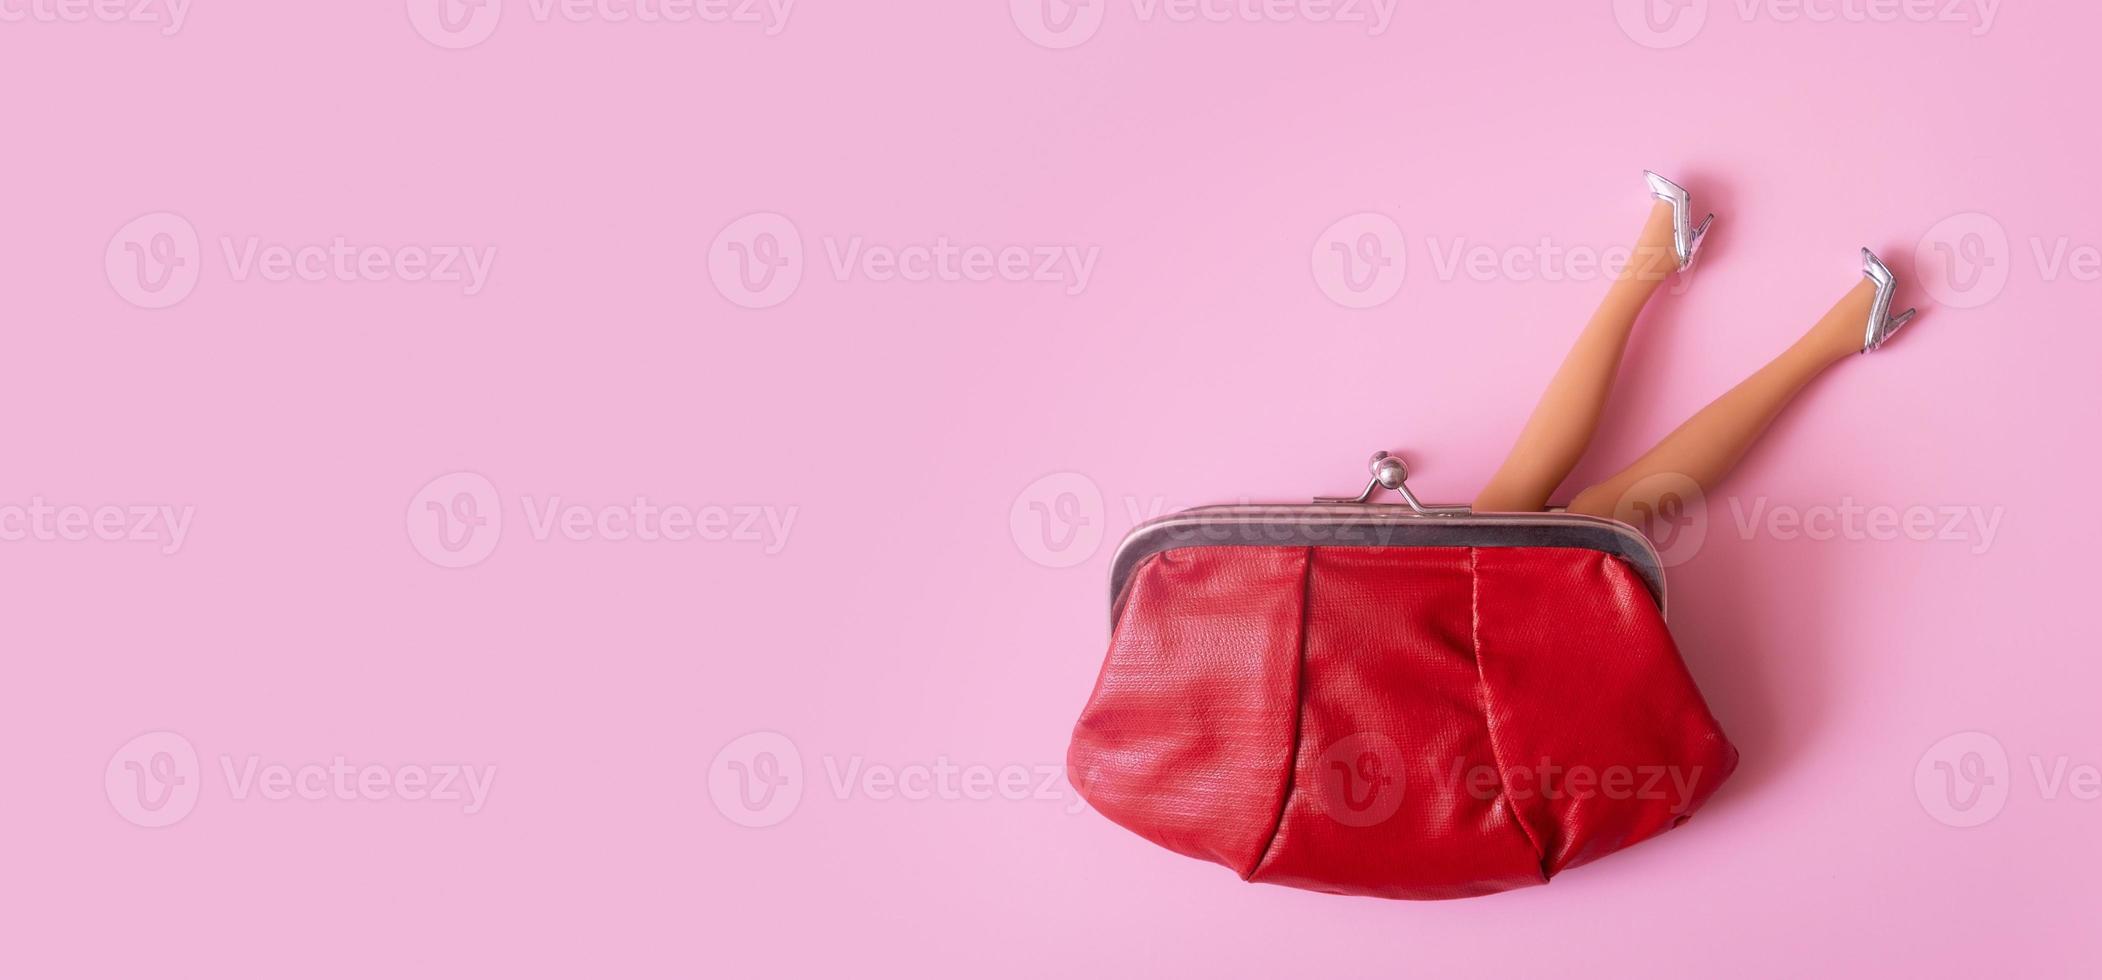 Puppenbeine in silbernen Schuhen, die aus der Draufsicht der Brieftasche herausragen. kreatives weibliches einkaufs- oder finanzkonzept foto